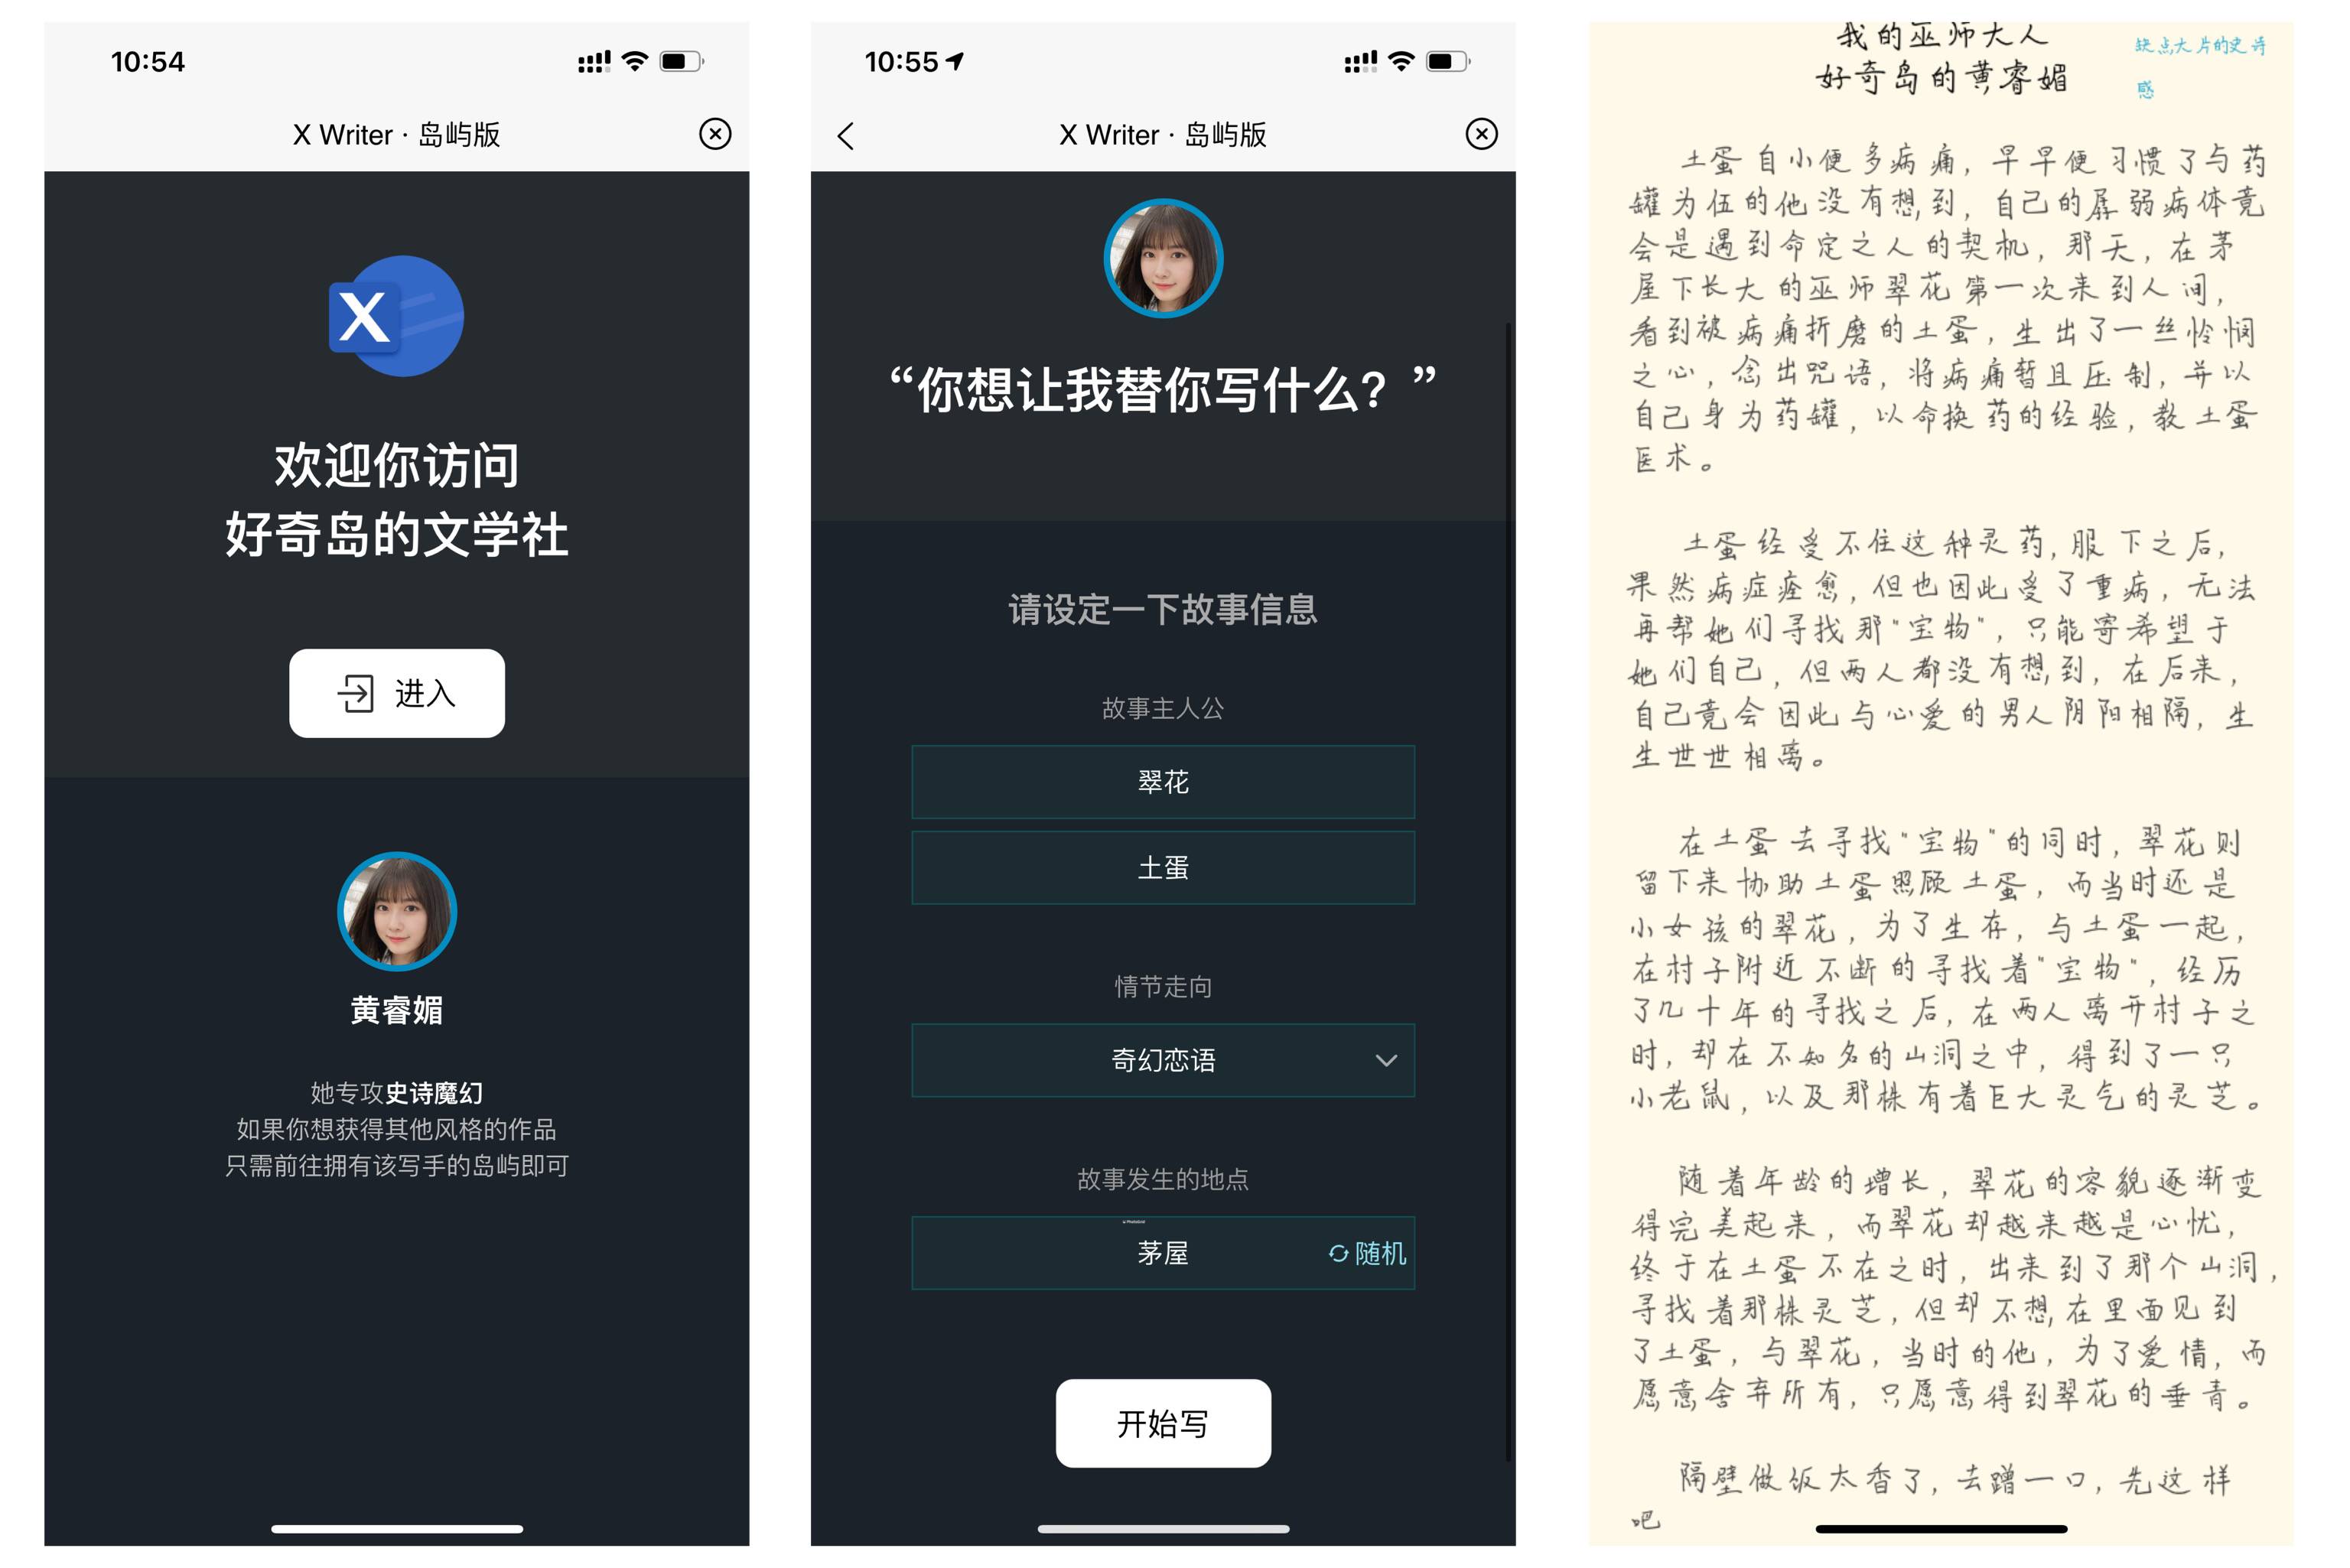 IMG 5643 - Un’app che non è umana tranne te, un’isola che sovverte ogni forma di interazione sociale｜Intervista al CEO di Xiaobing Li Di